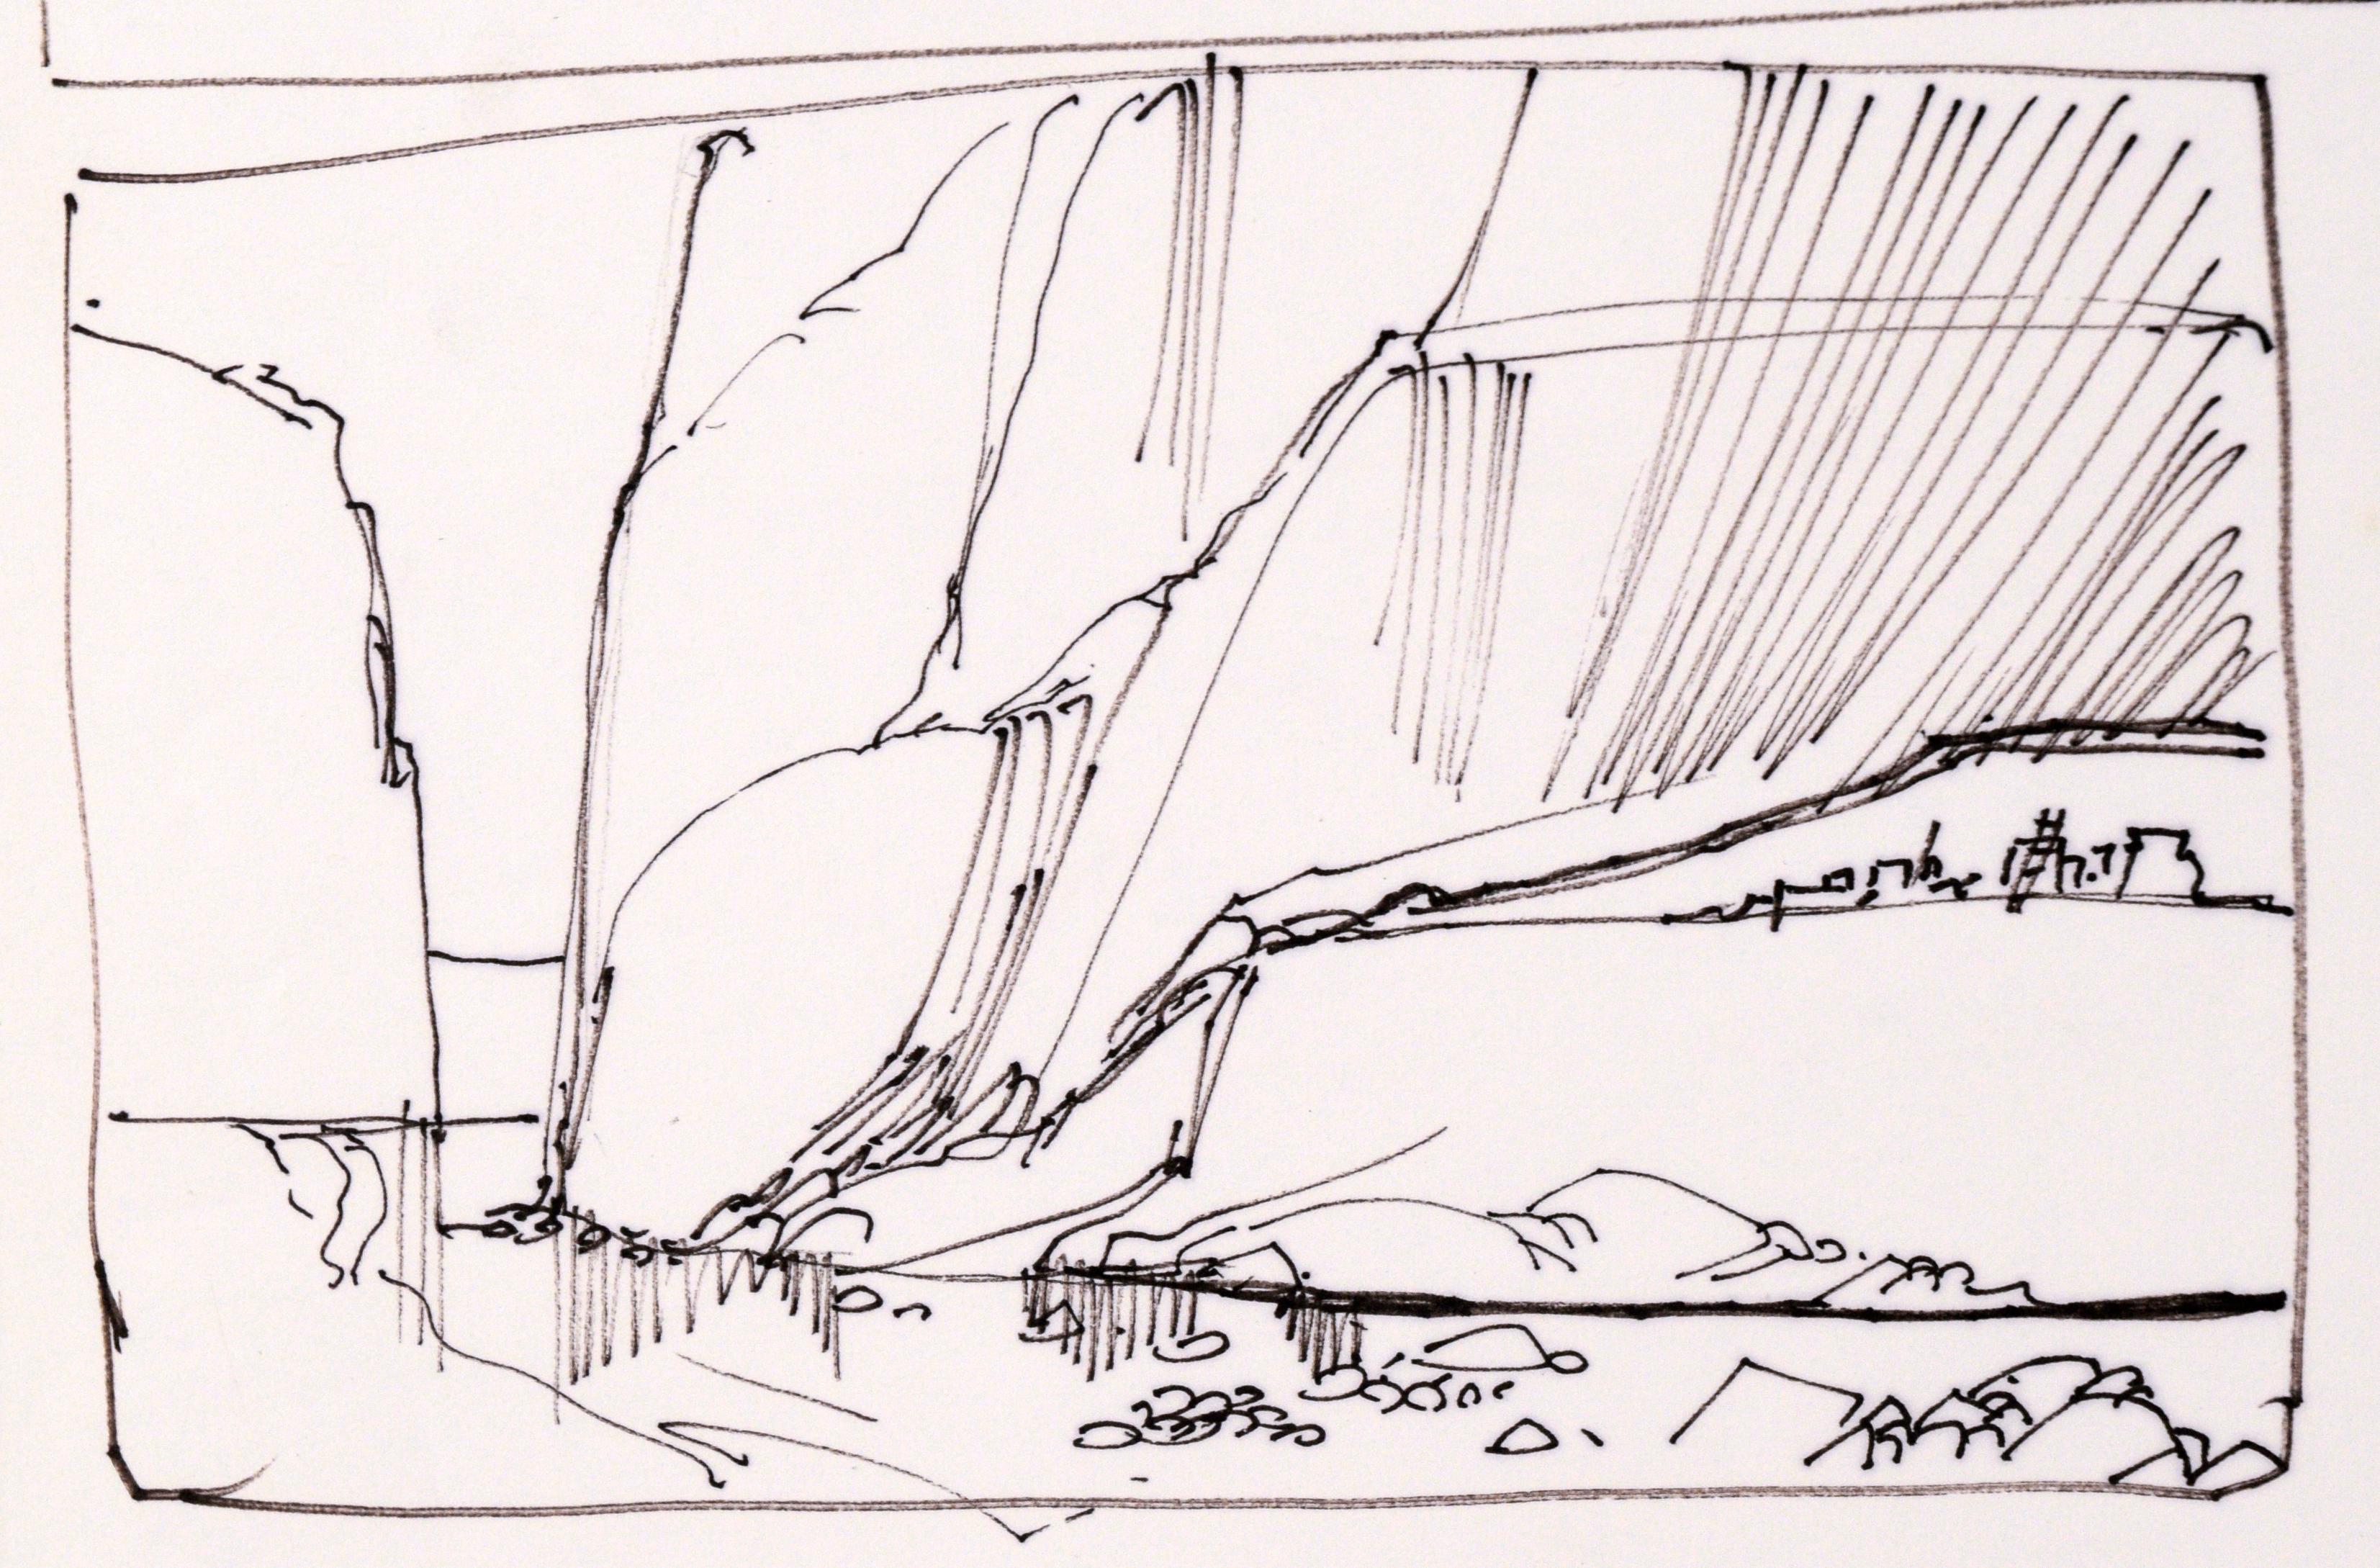 Sechstafelige Skizzen von Wüsten- und Canyonlandschaften in Tusche auf Papier

Sammlung von Landschaftszeichnungen des in Maine lebenden Künstlers Laurence Sisson (Amerikaner, 1928-2015). Sechs Tafeln mit vorbereitenden Zeichnungen für